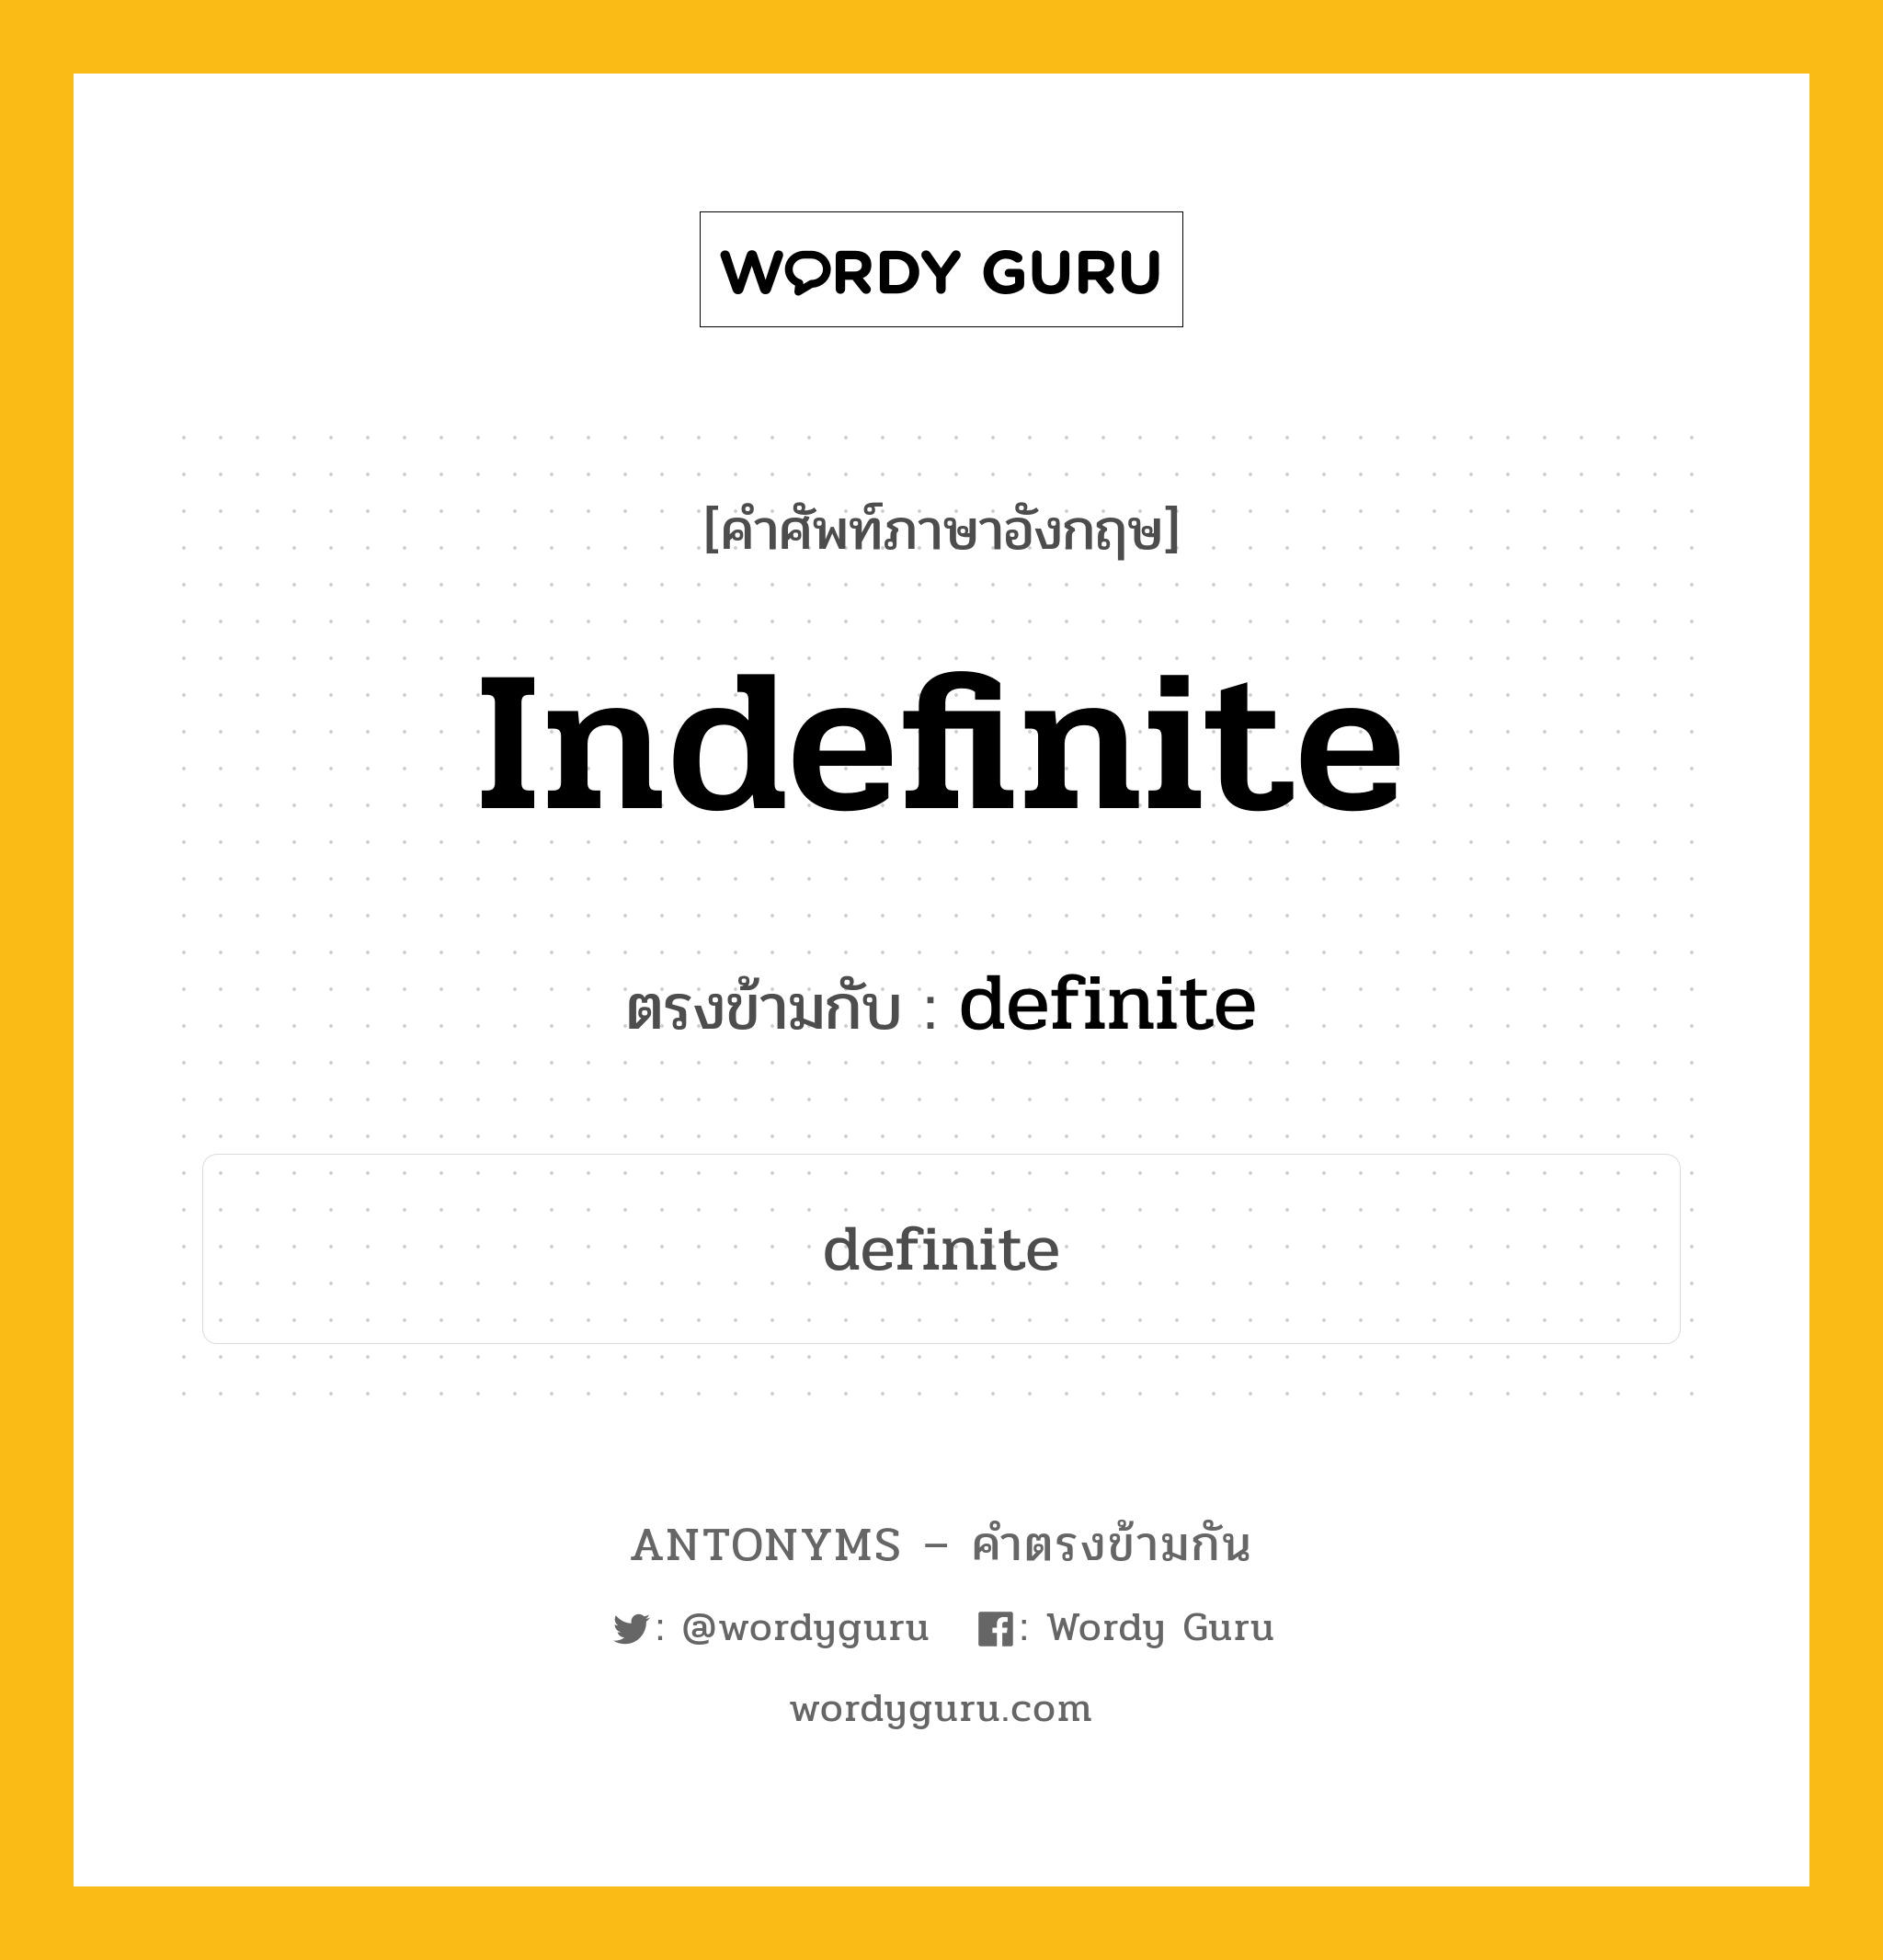 indefinite เป็นคำตรงข้ามกับคำไหนบ้าง?, คำศัพท์ภาษาอังกฤษ indefinite ตรงข้ามกับ definite หมวด definite